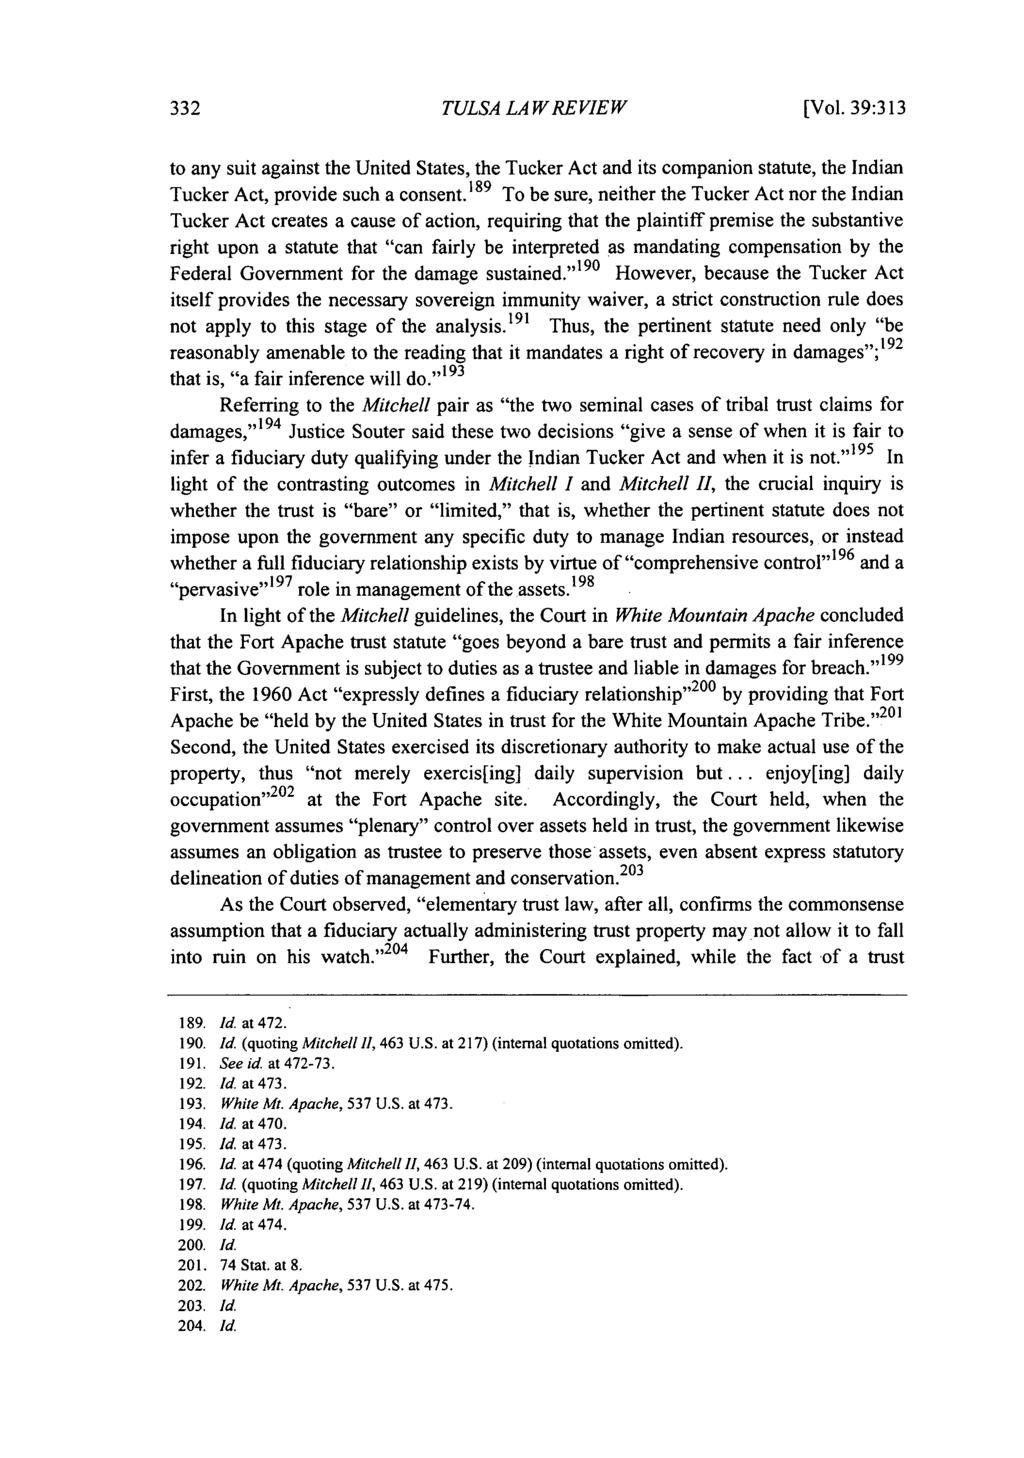 Tulsa Law Review, Vol. 39 [2003], Iss. 2, Art. 4 TULSA LA W REVIEW [Vol.